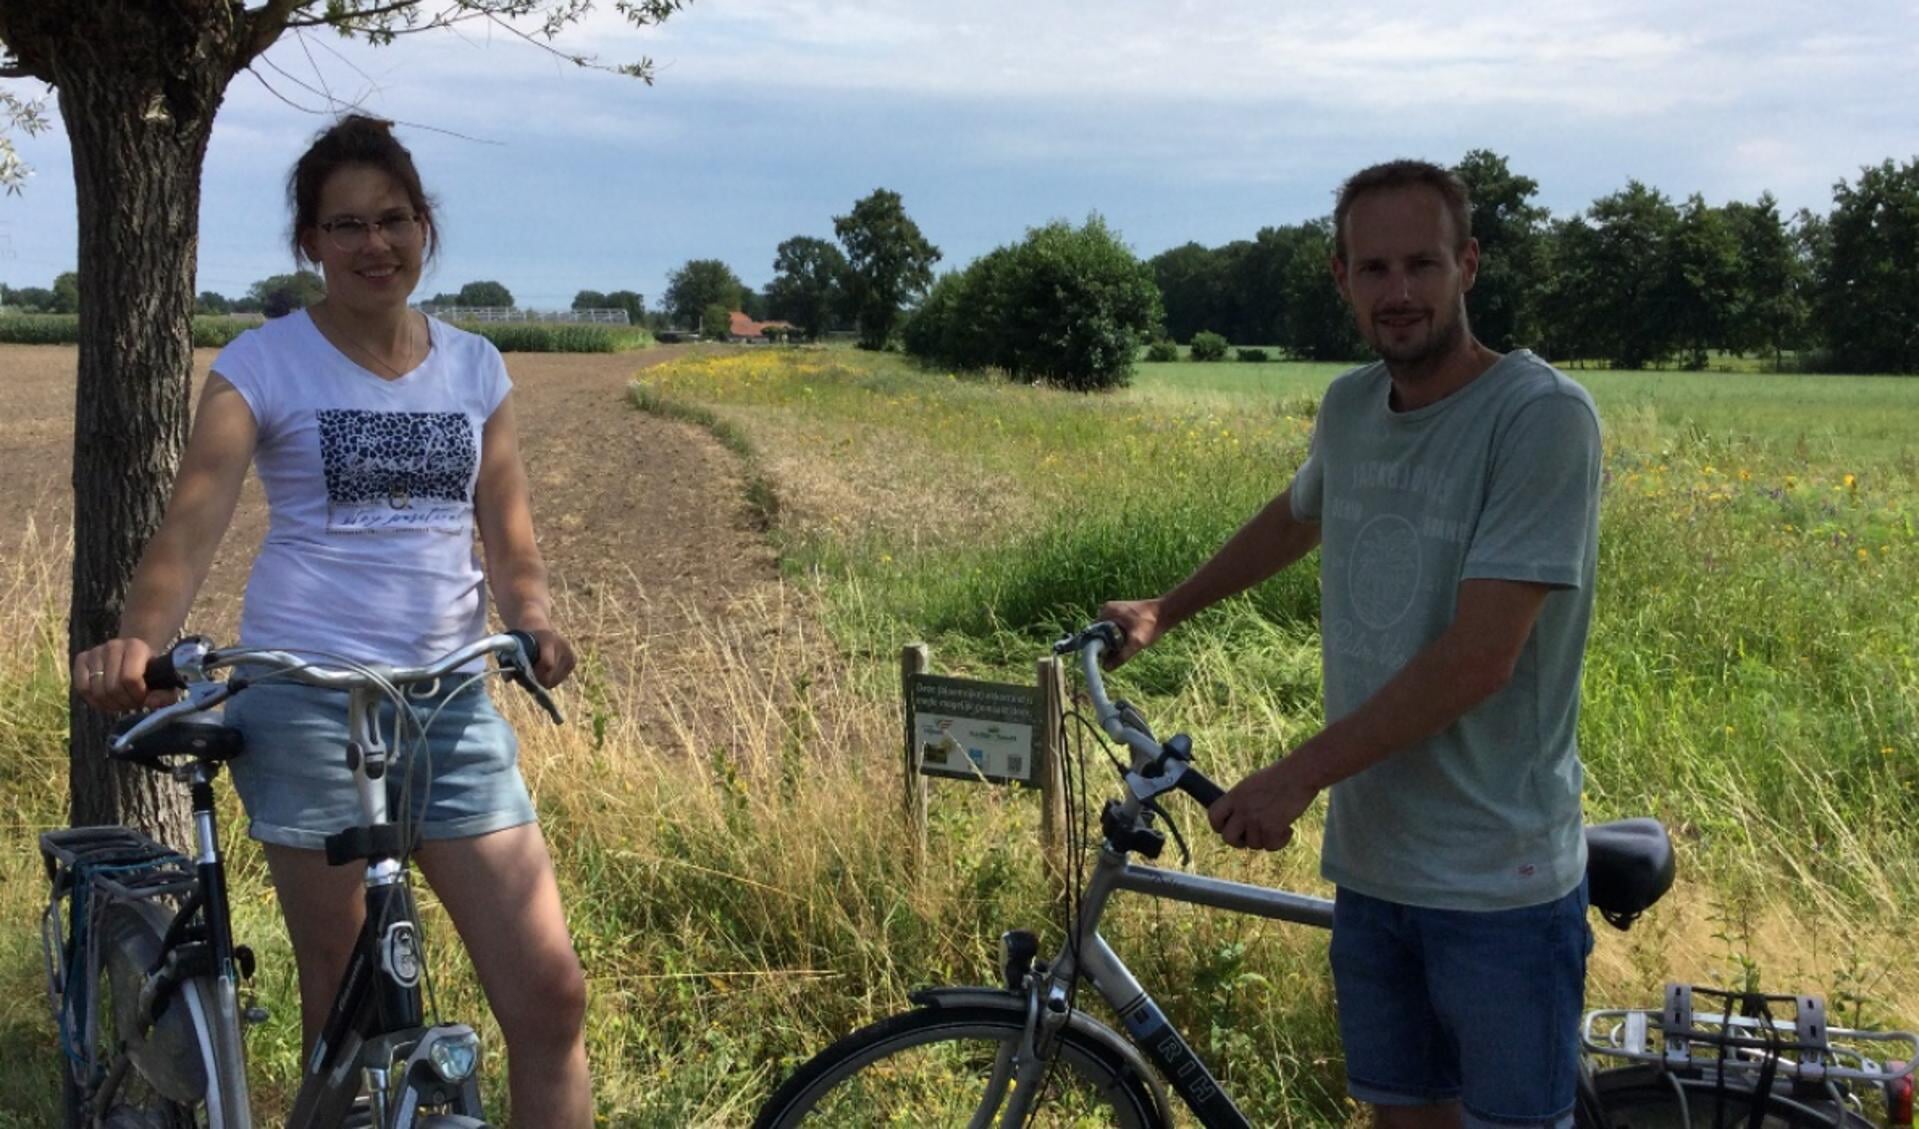 Gerjanne van Esveld-Doppenberg (Bestuurslid St. BAO en melkveehouder in Putten) en Peter van deVeen (Veldcoördinator Collectief Veluwe en melkveehouder in Nijkerk) hebben de fietsroute uitgezet.